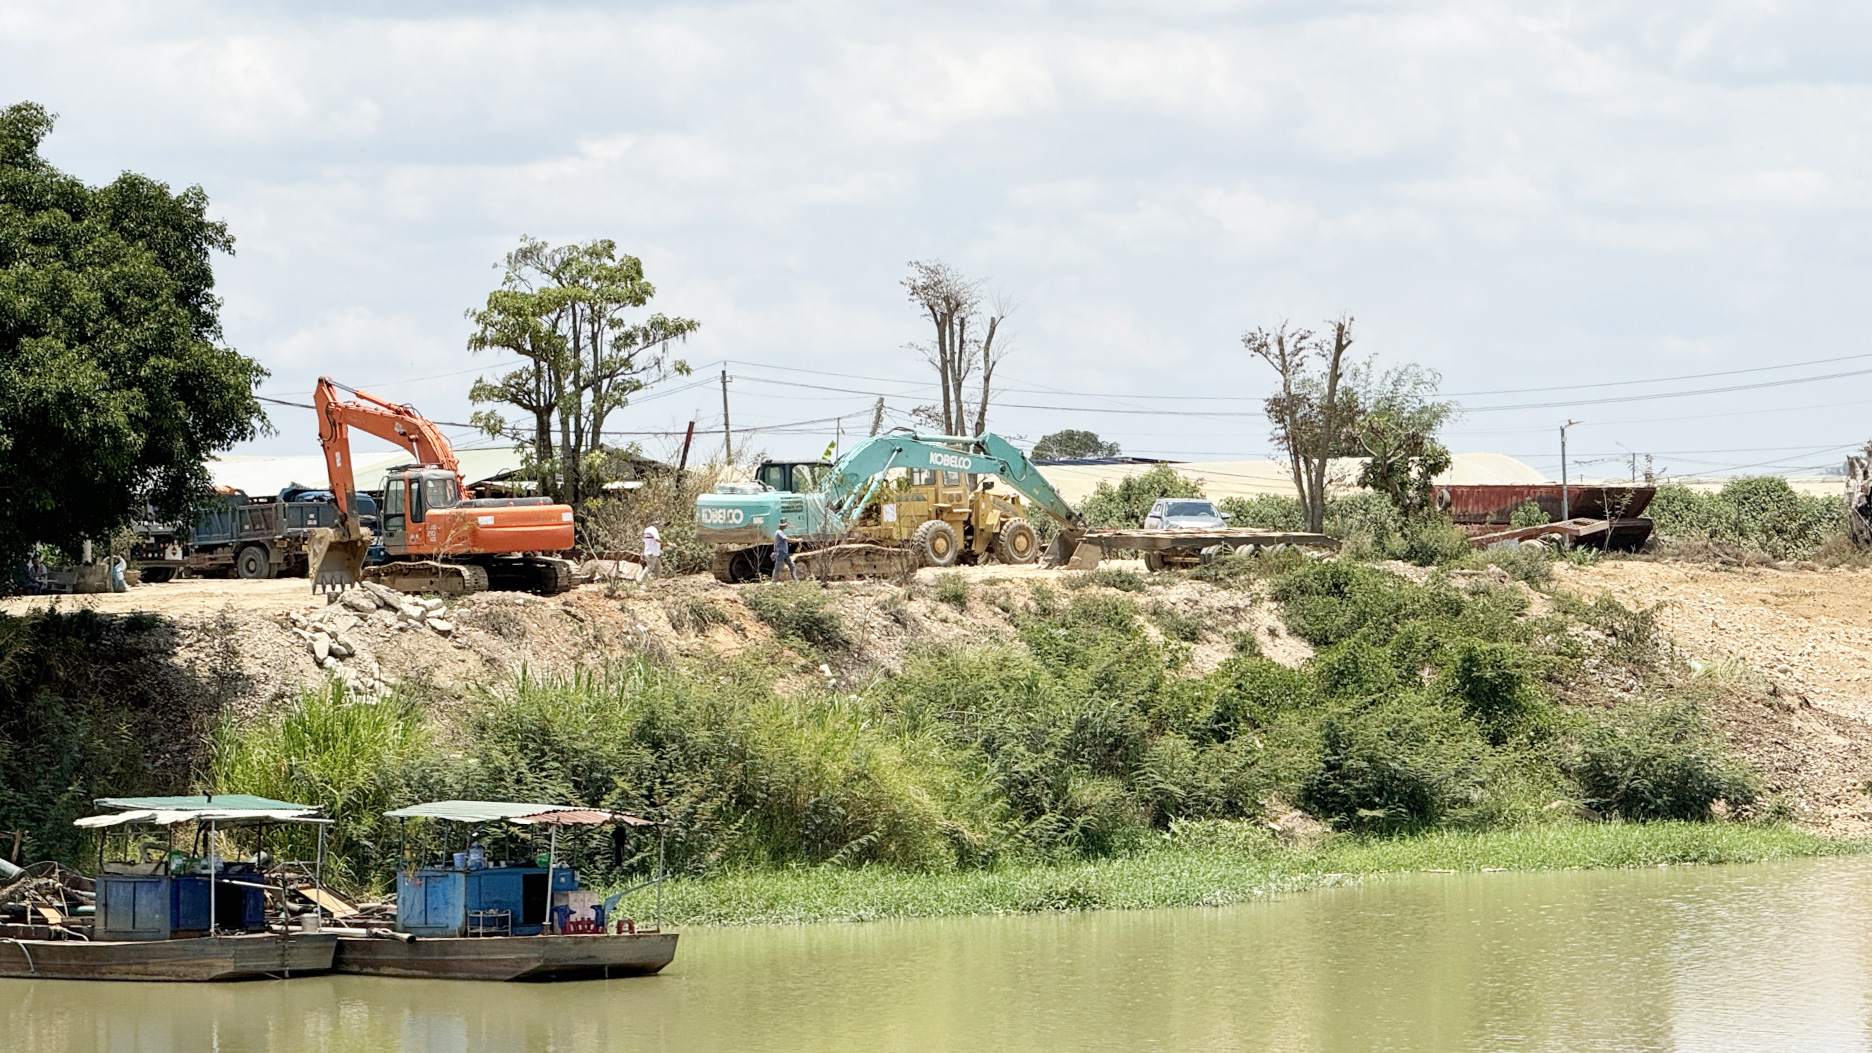 Đoàn ĐBQH tỉnh Lâm Đồng yêu cầu huyện Đơn Dương giải trình các vấn đề liên quan đến khai thác khoáng sản